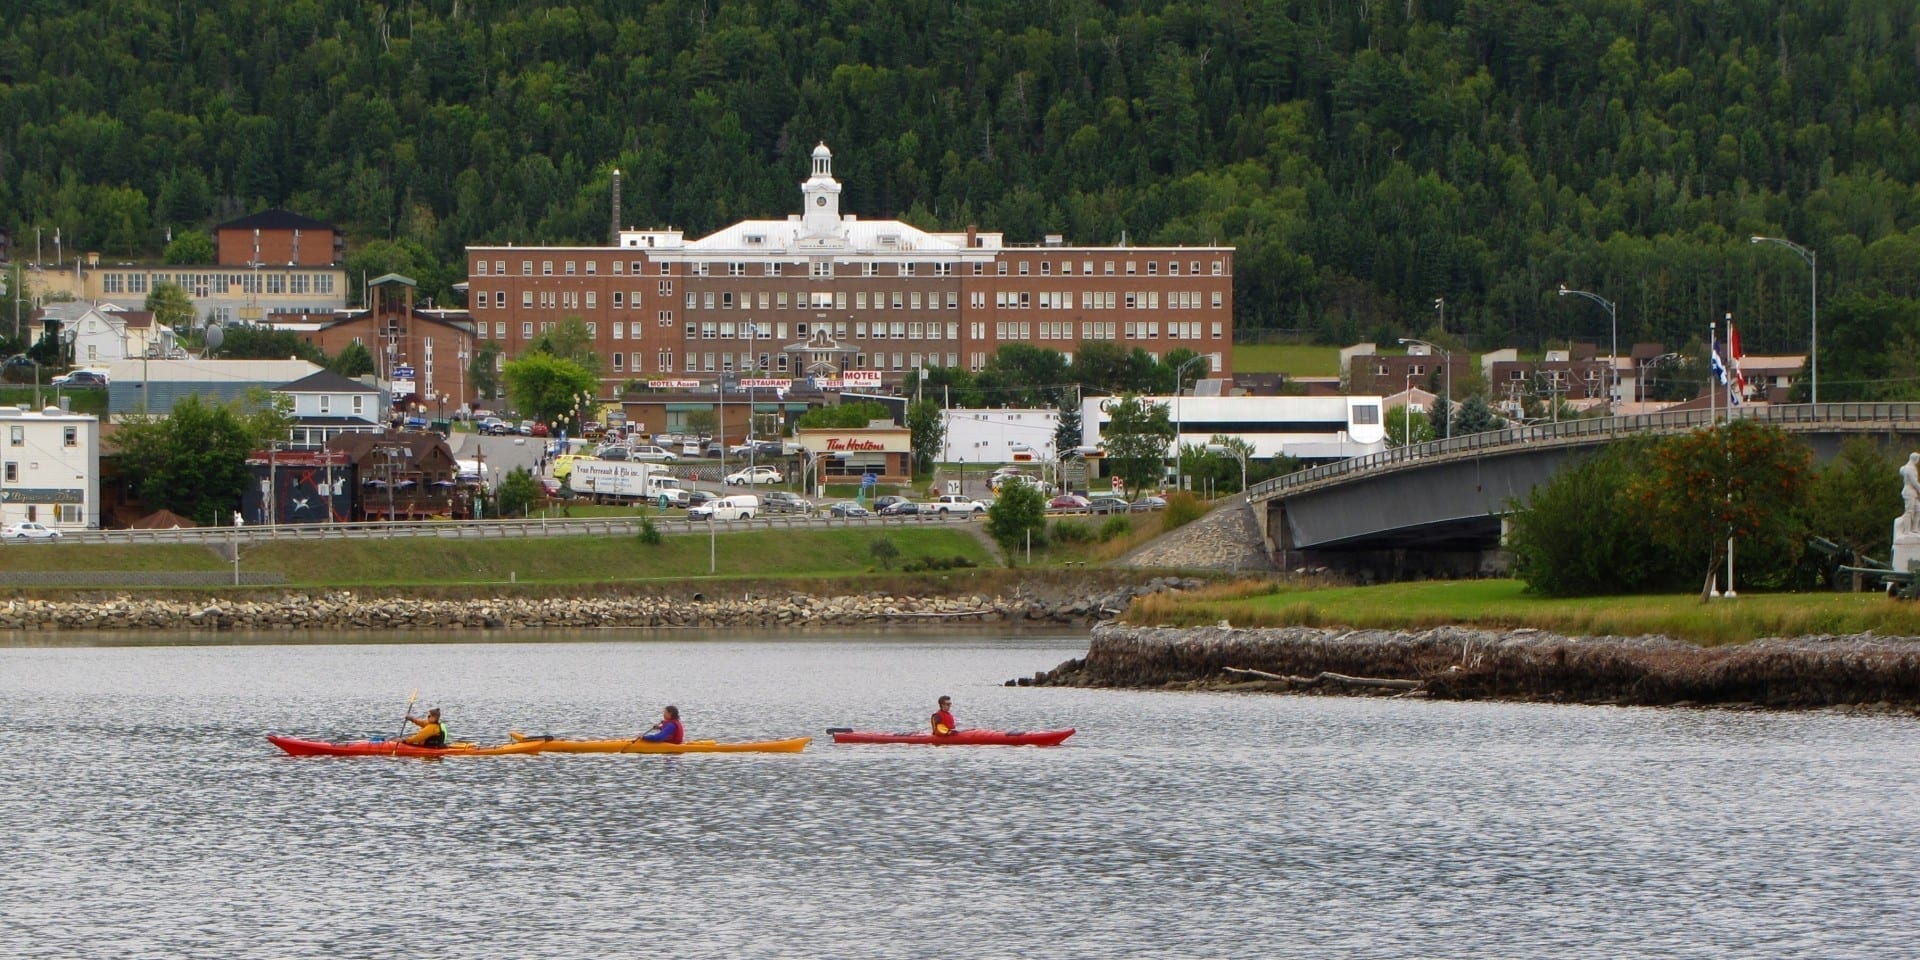 Vista del centro de la ciudad de Gaspé desde el otro lado de la bahía. Gaspé Canadá